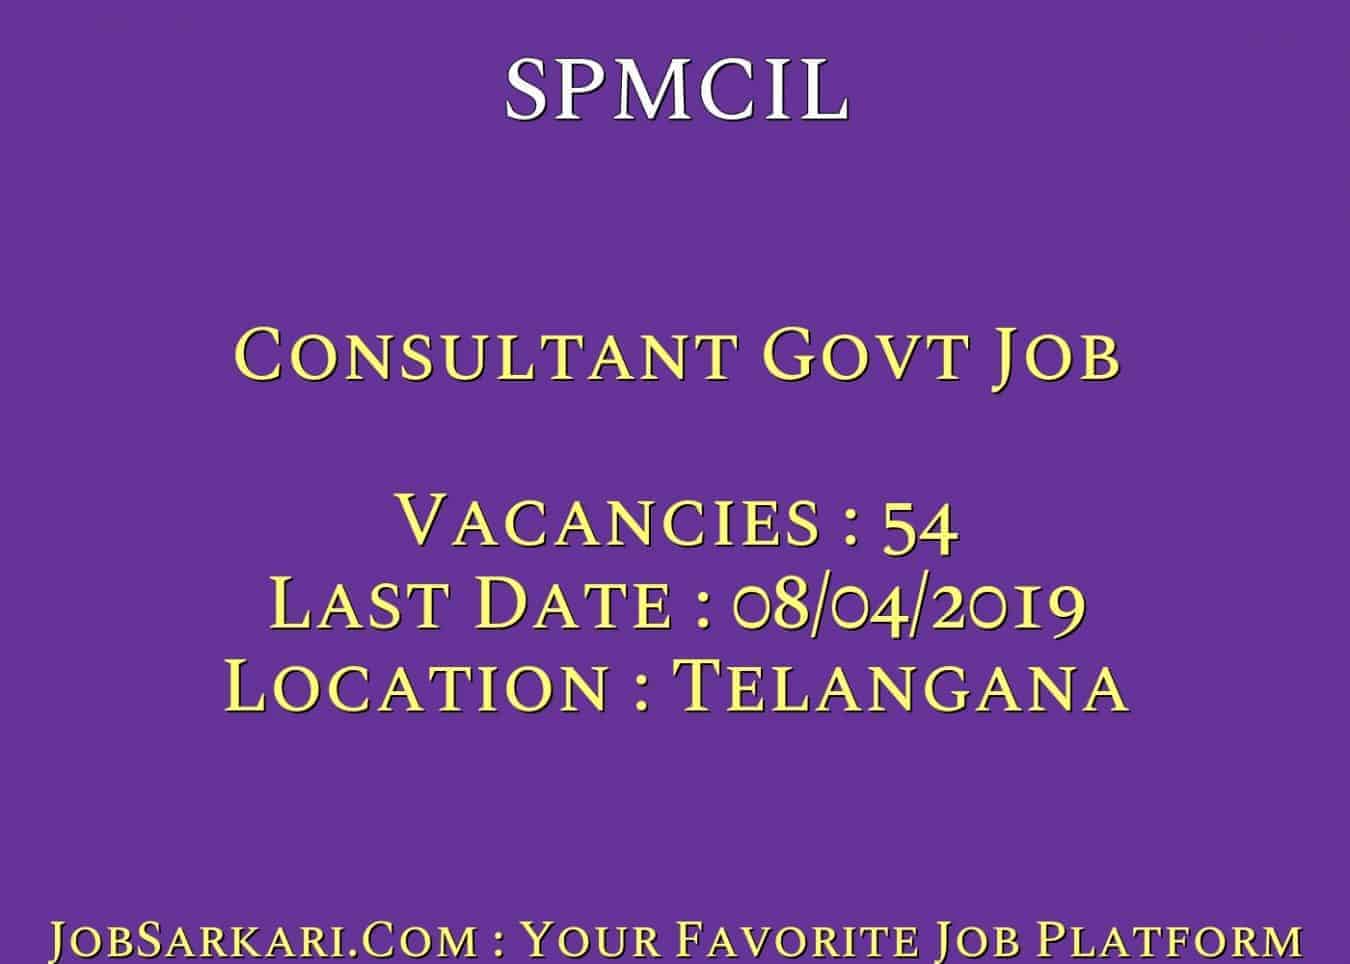 SPMCIL Recruitment 2019 For Consultant Govt Job